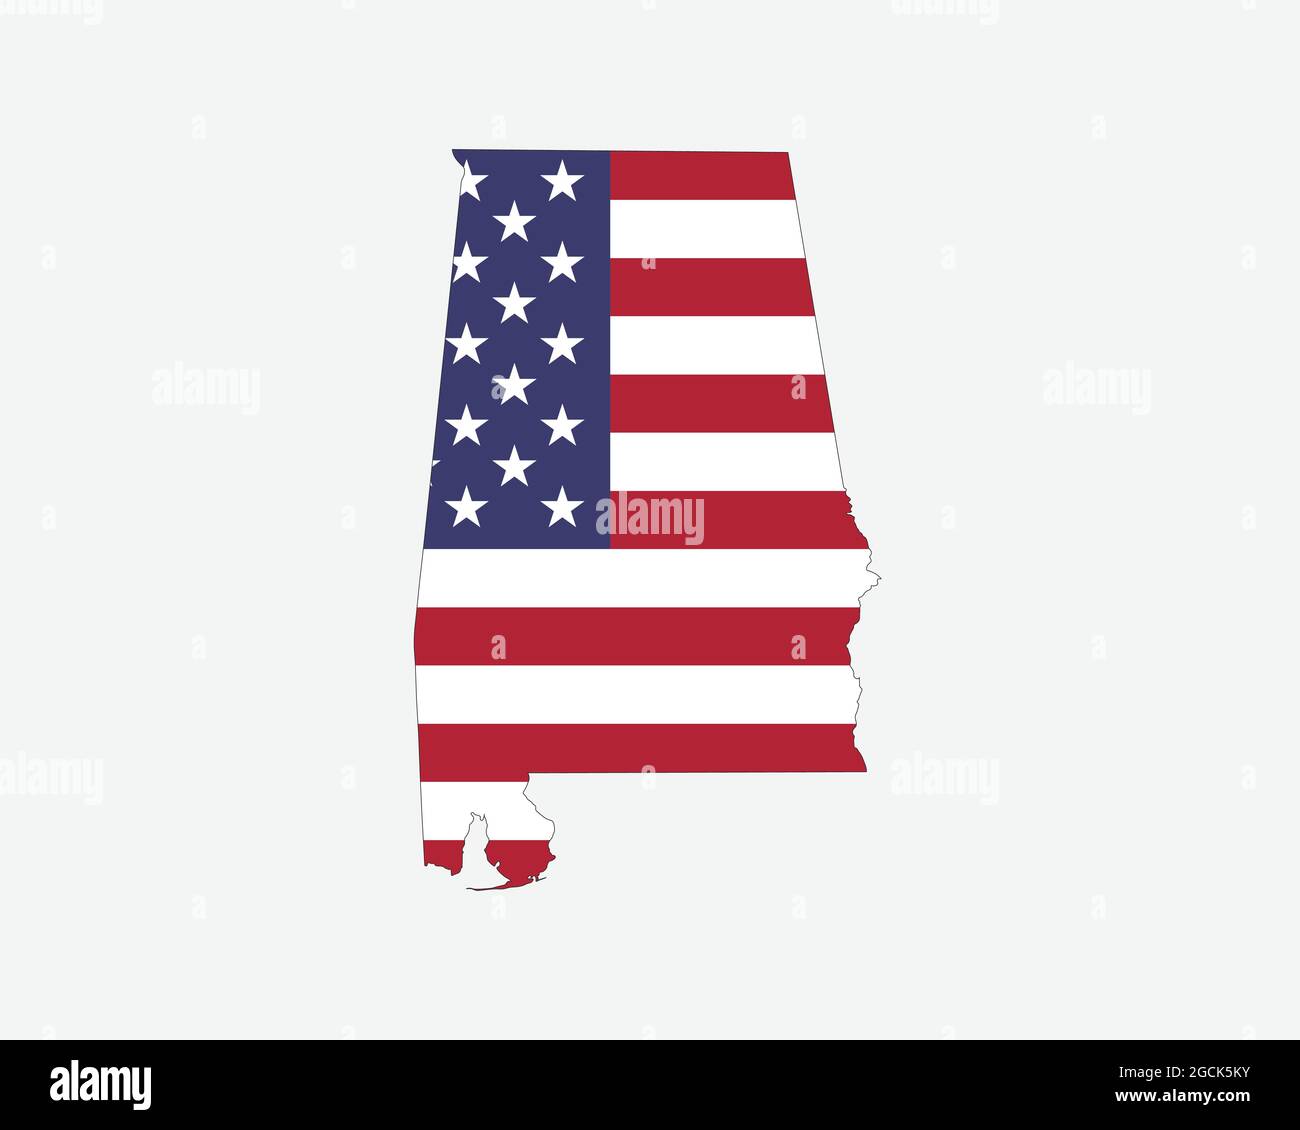 Mappa dell'Alabama sulla bandiera americana. AL, USA mappa di stato sulla bandiera degli Stati Uniti. Icona Clipart grafica vettoriale EPS Illustrazione Vettoriale